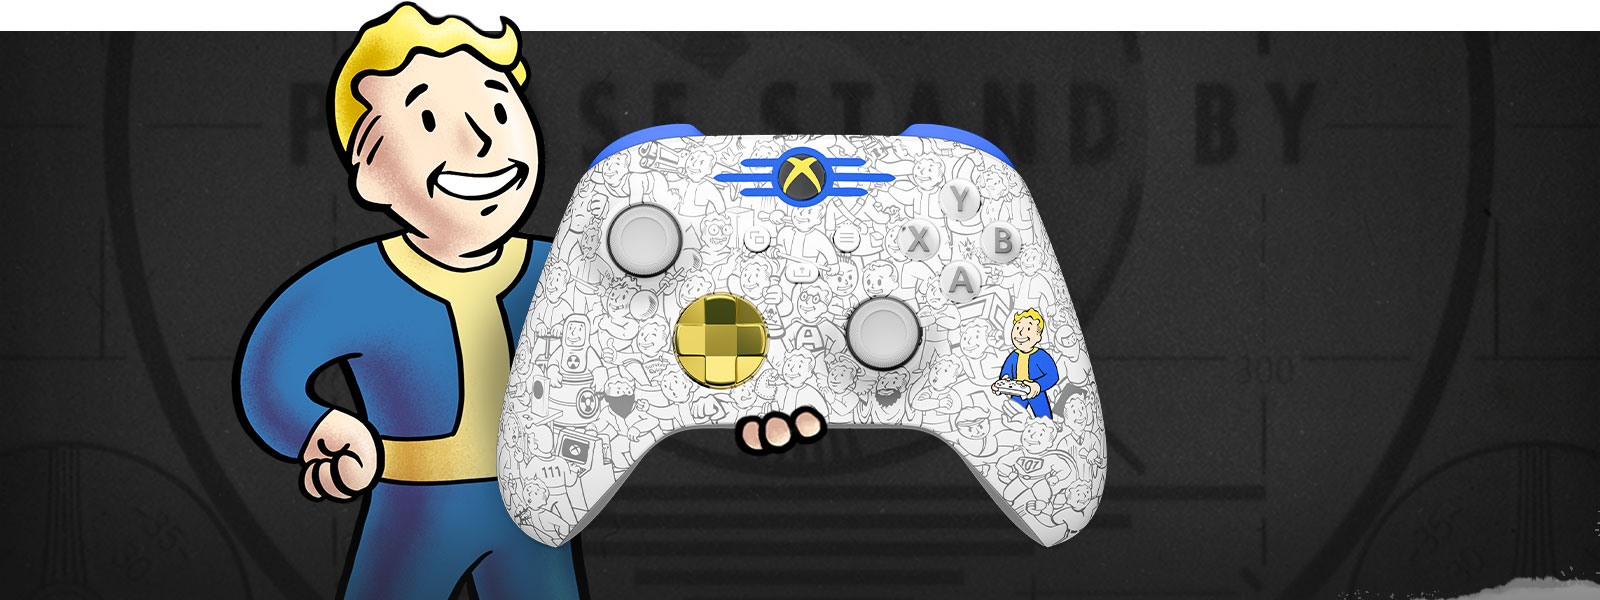 Vault Boy sostiene un Mando inalámbrico Xbox: Fallout Edition en la palma. Detrás de él, se ve una pantalla con el mensaje 'PLEASE STAND BY'.